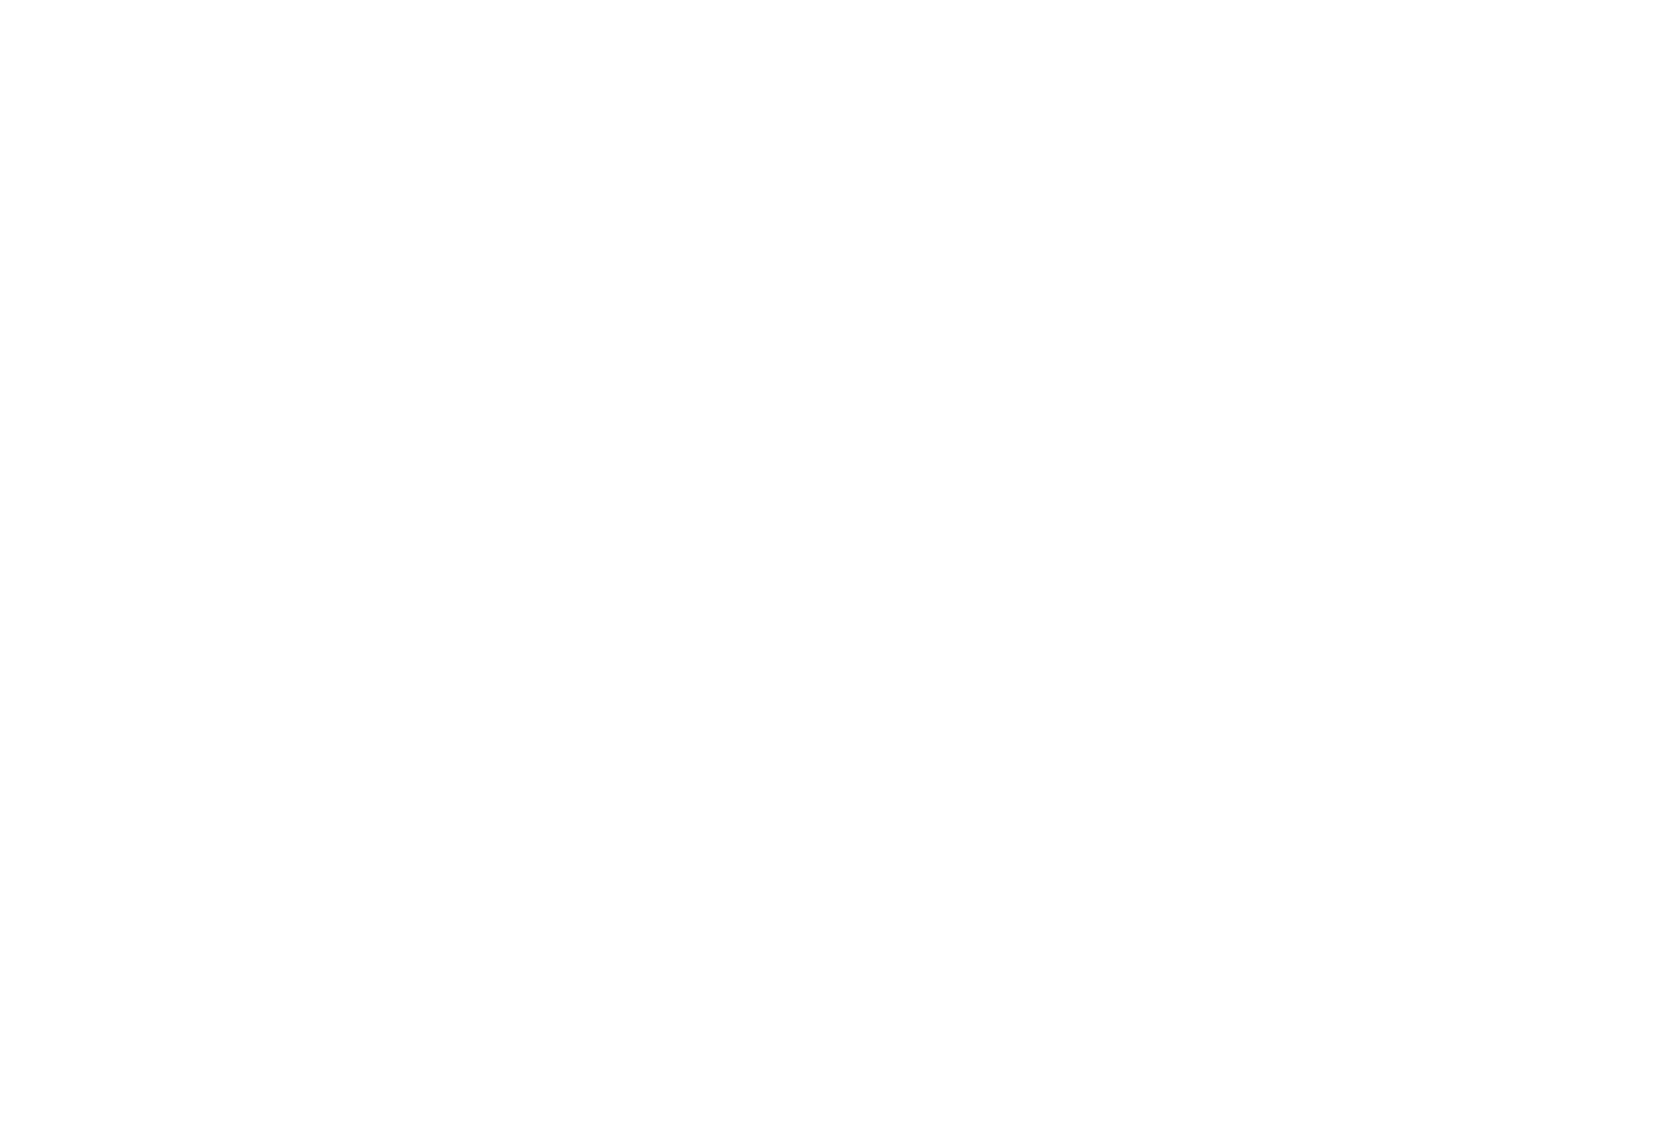 LOGO SOFLAC BLANC